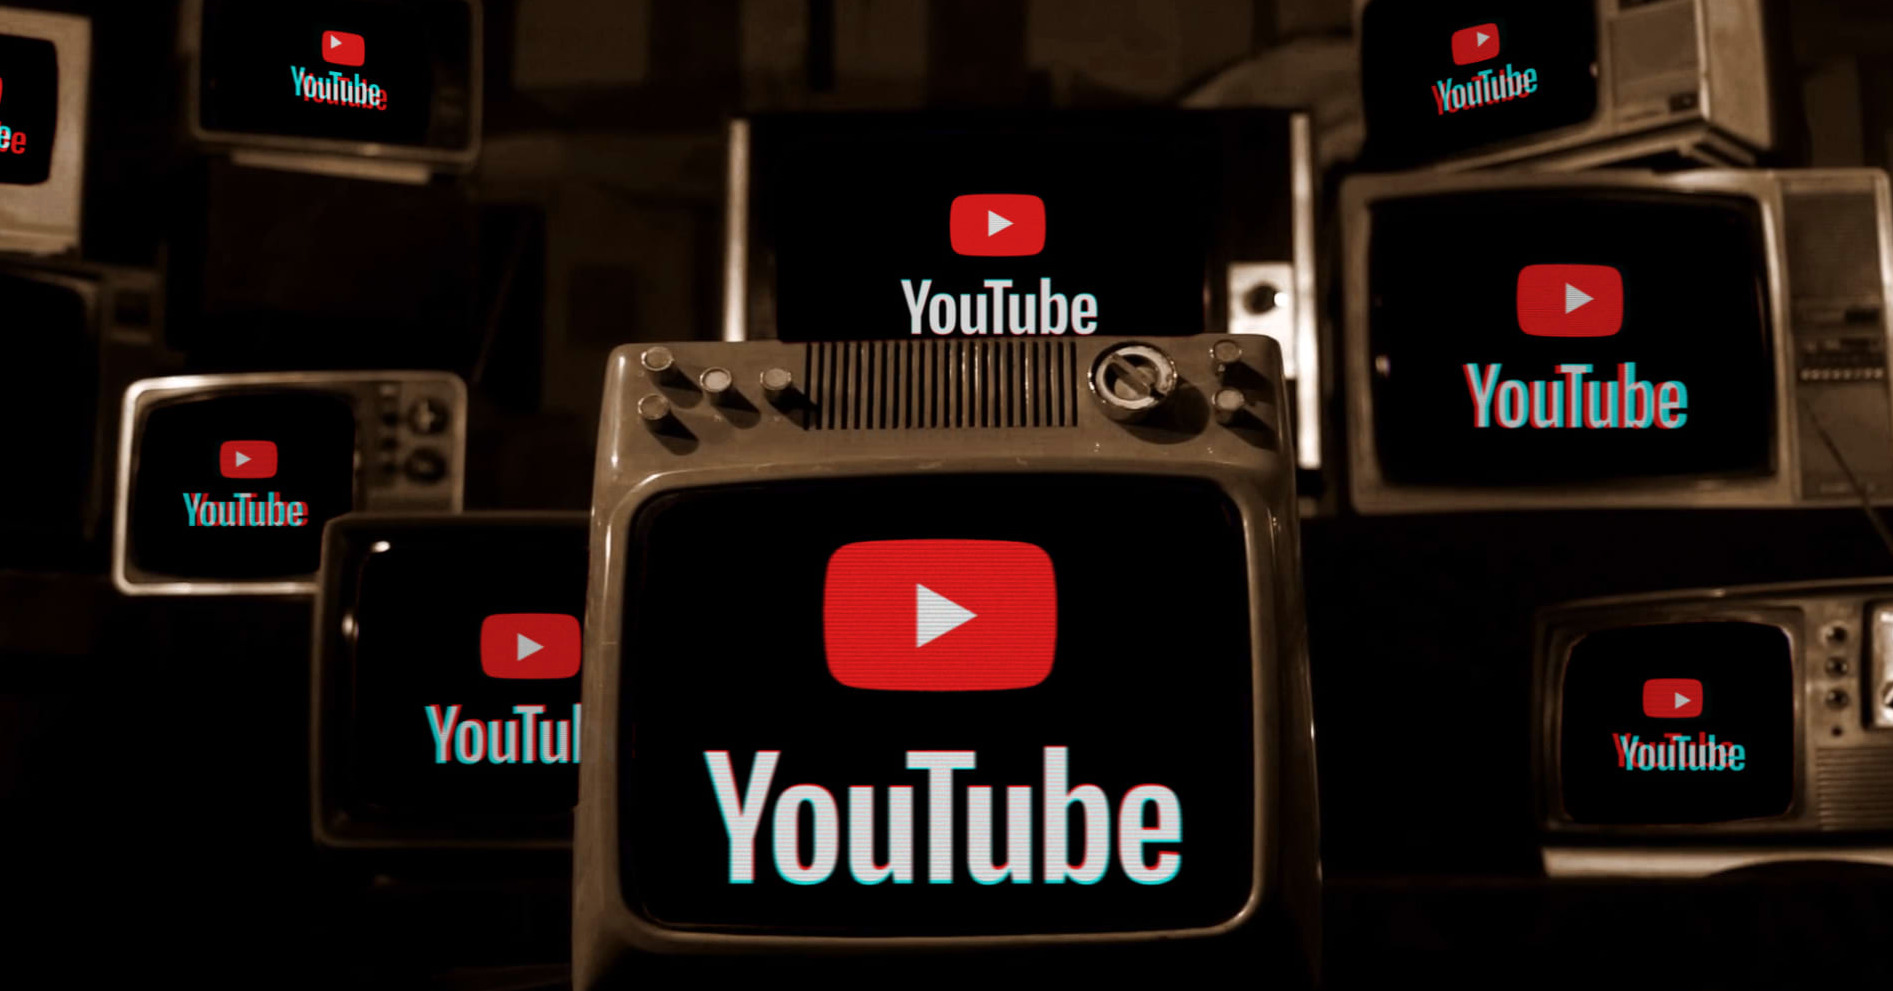 YouTube Gelirleri 2% Azaldı, Google Hisseleri Düşüşe Geçti!